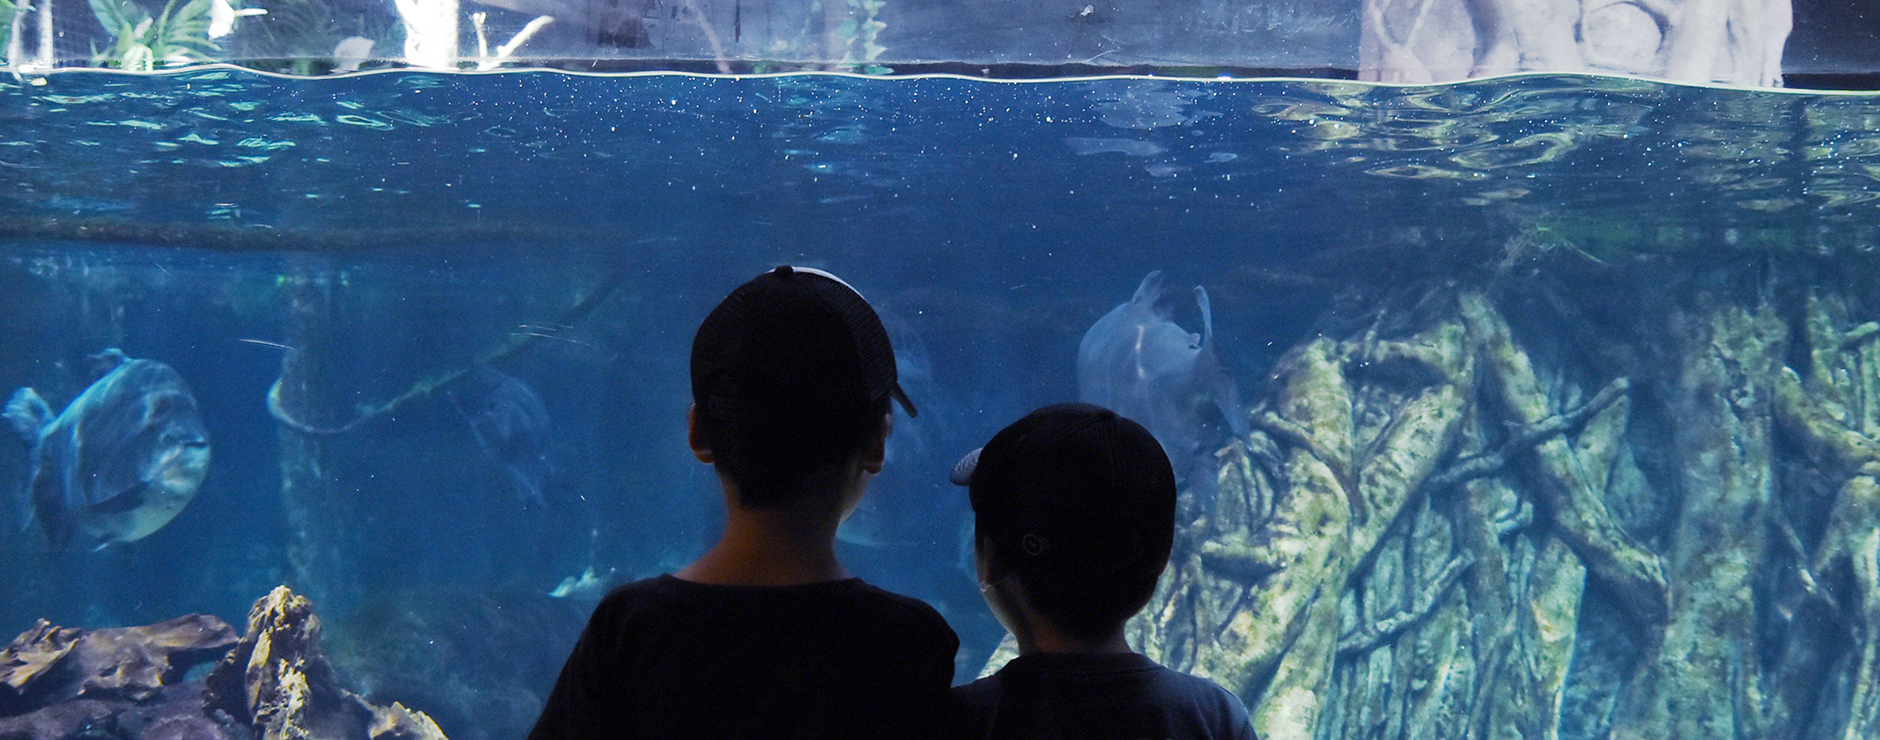 楽しみながら学べる、世界最大級の淡水魚水族館。